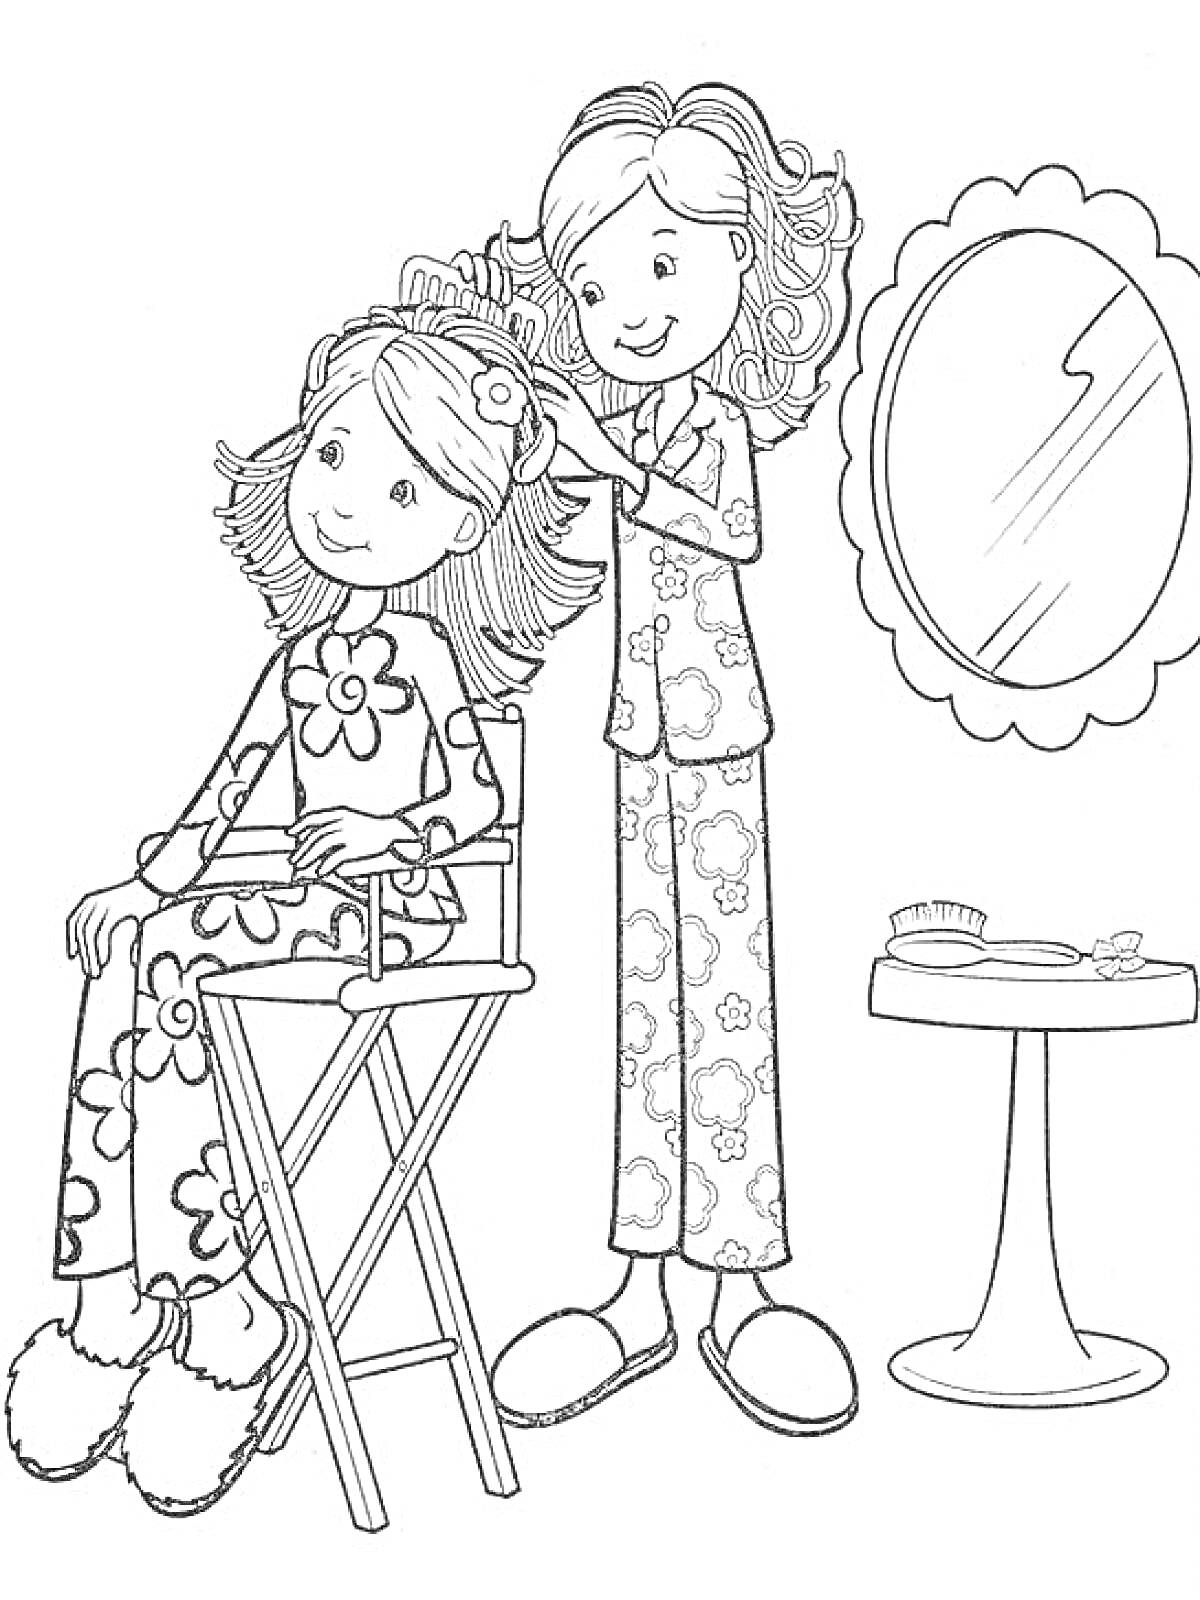 Раскраска Девочки в пижамах, одна делает прическу другой перед зеркалом